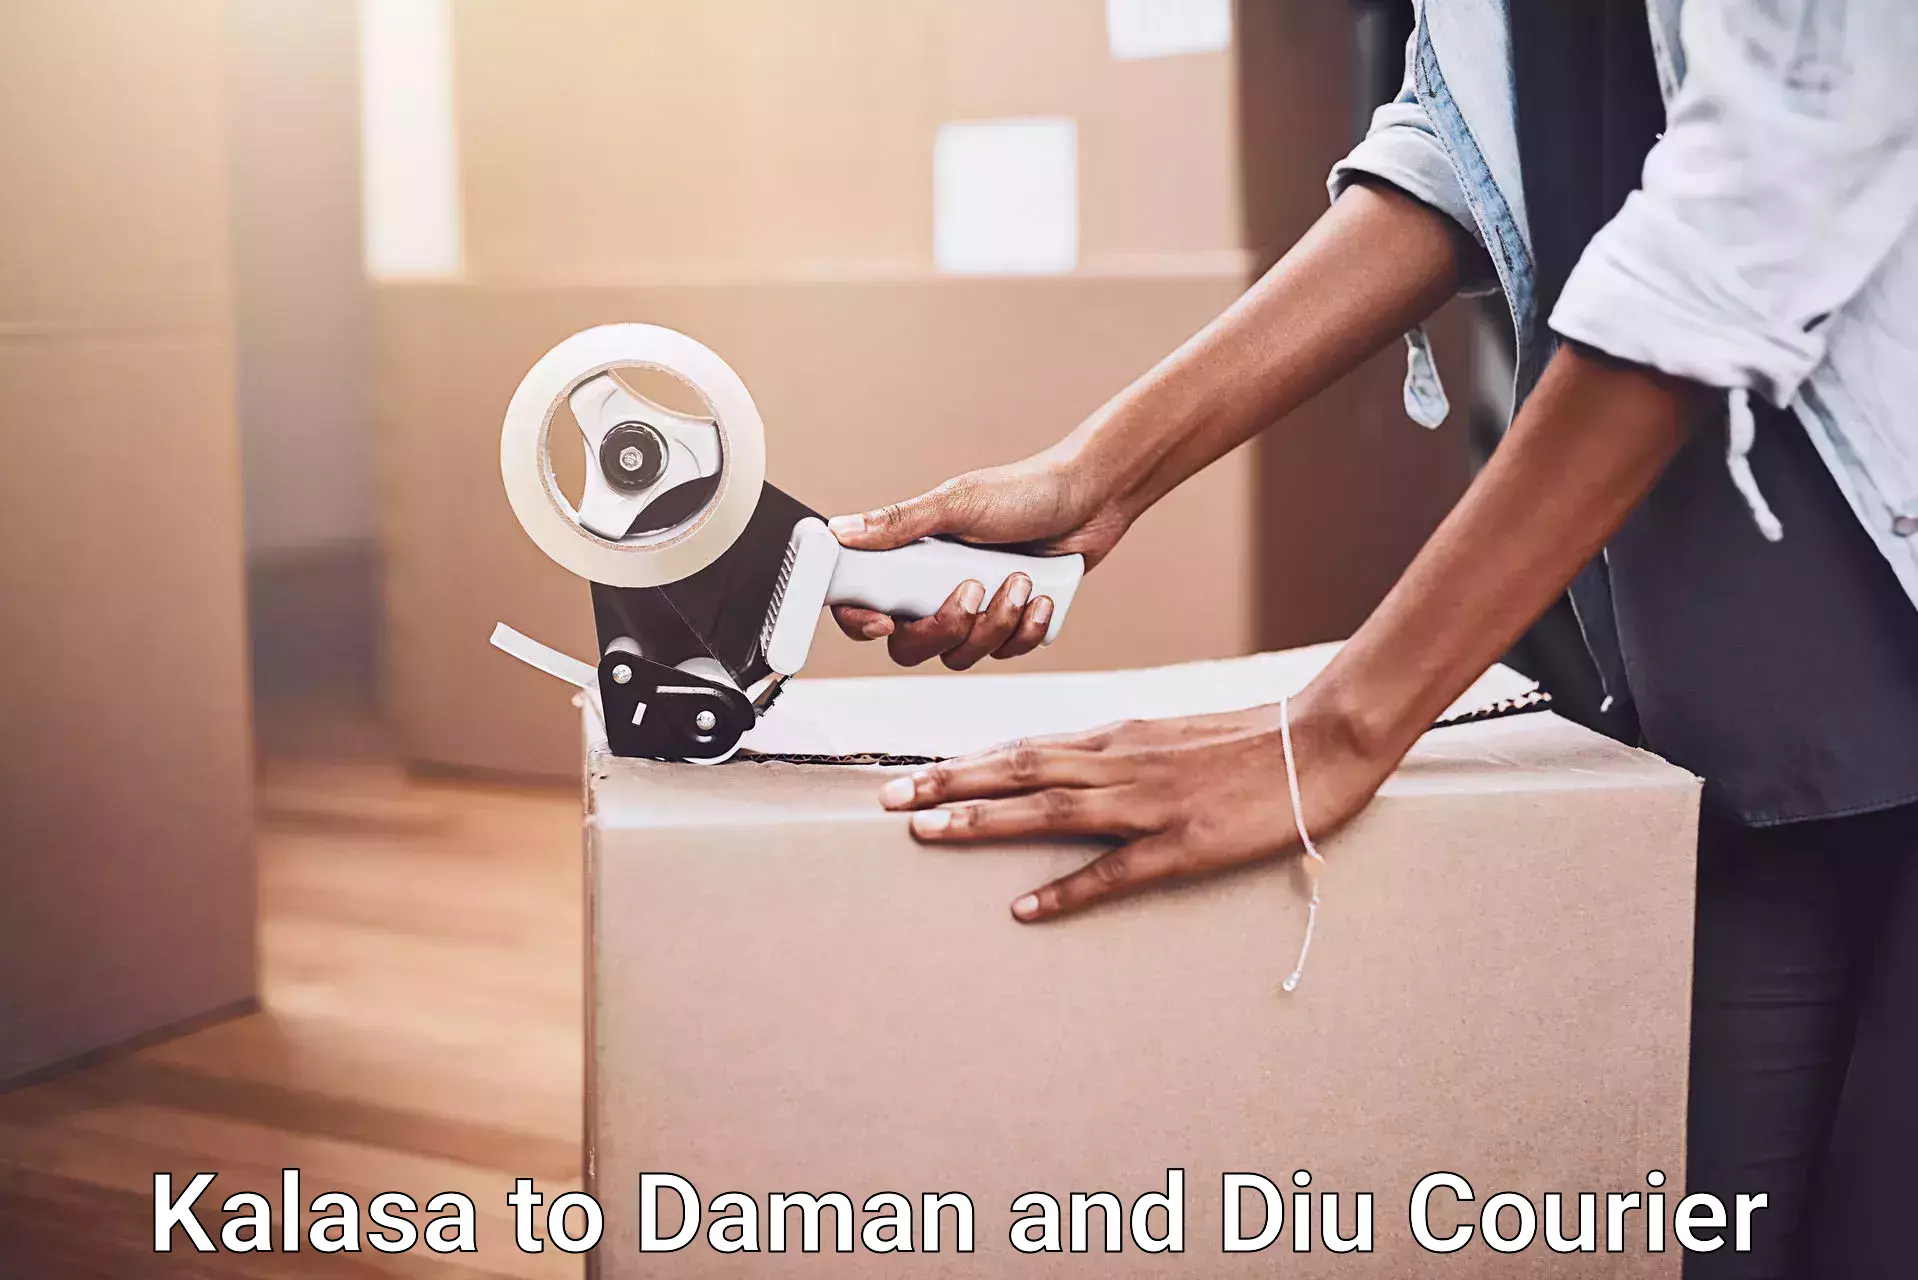 Professional home movers Kalasa to Daman and Diu